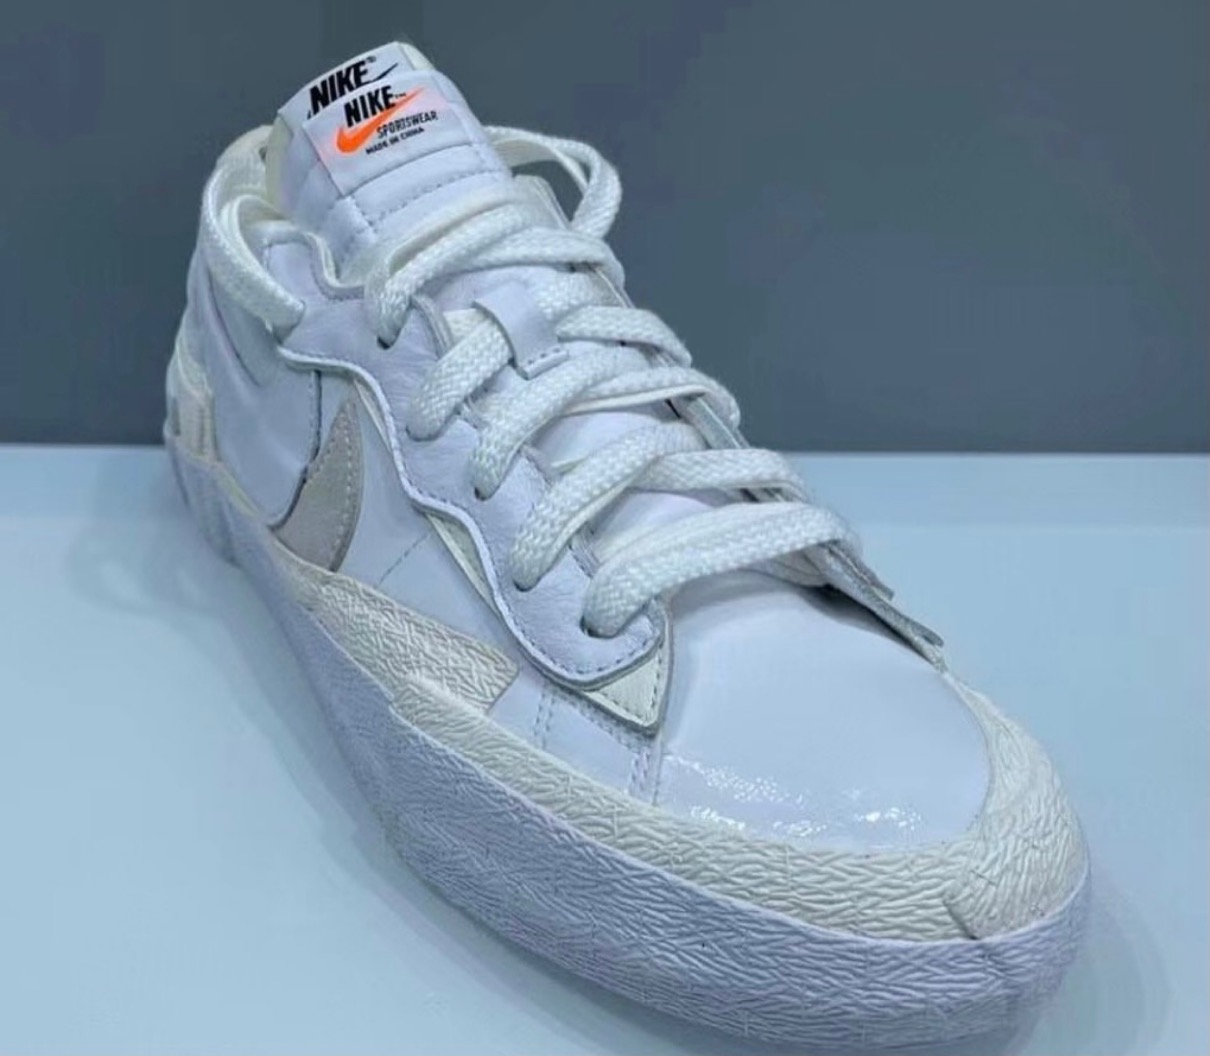 Sacai × Nike】Blazer Low “White Patent” & “Black Patent”が国内3月